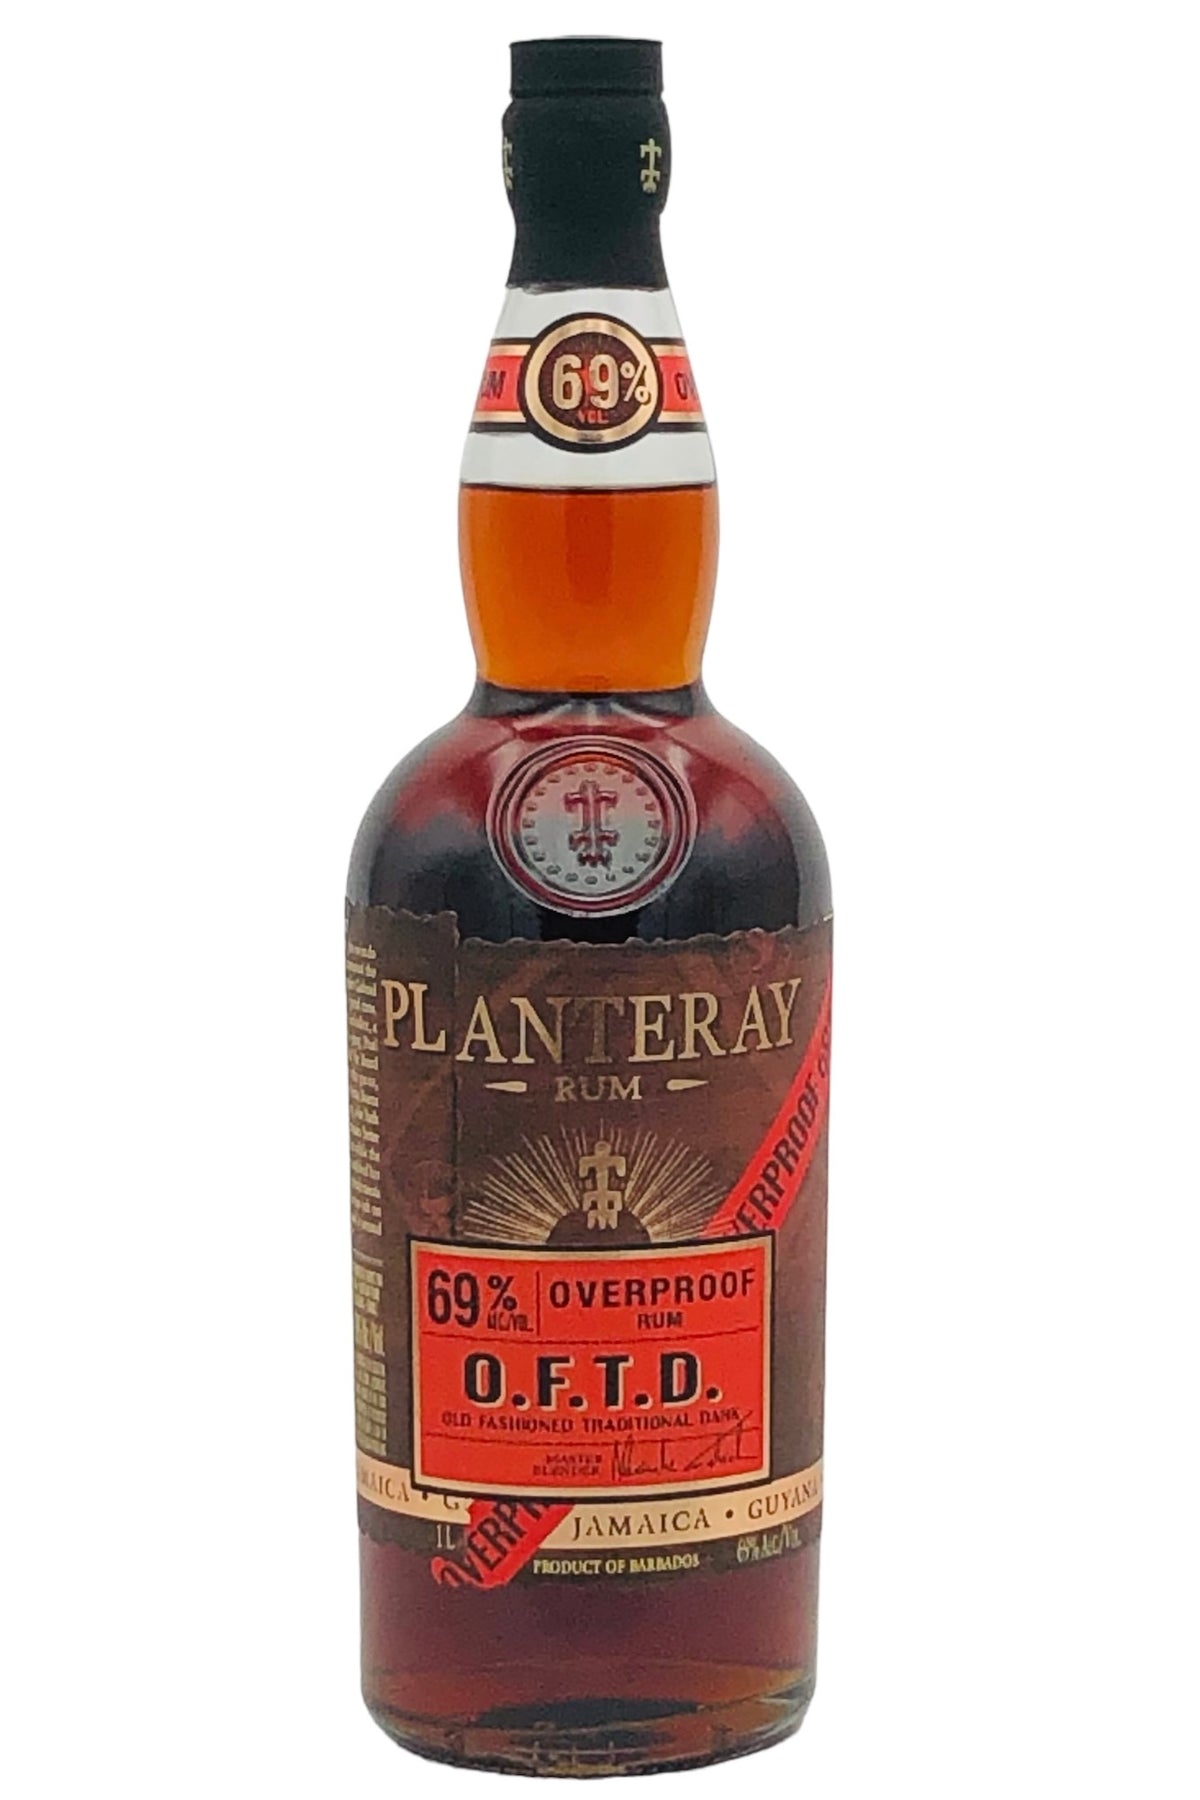 Planteray OFTD Overproof Rum (138 Proof) 1000 ml